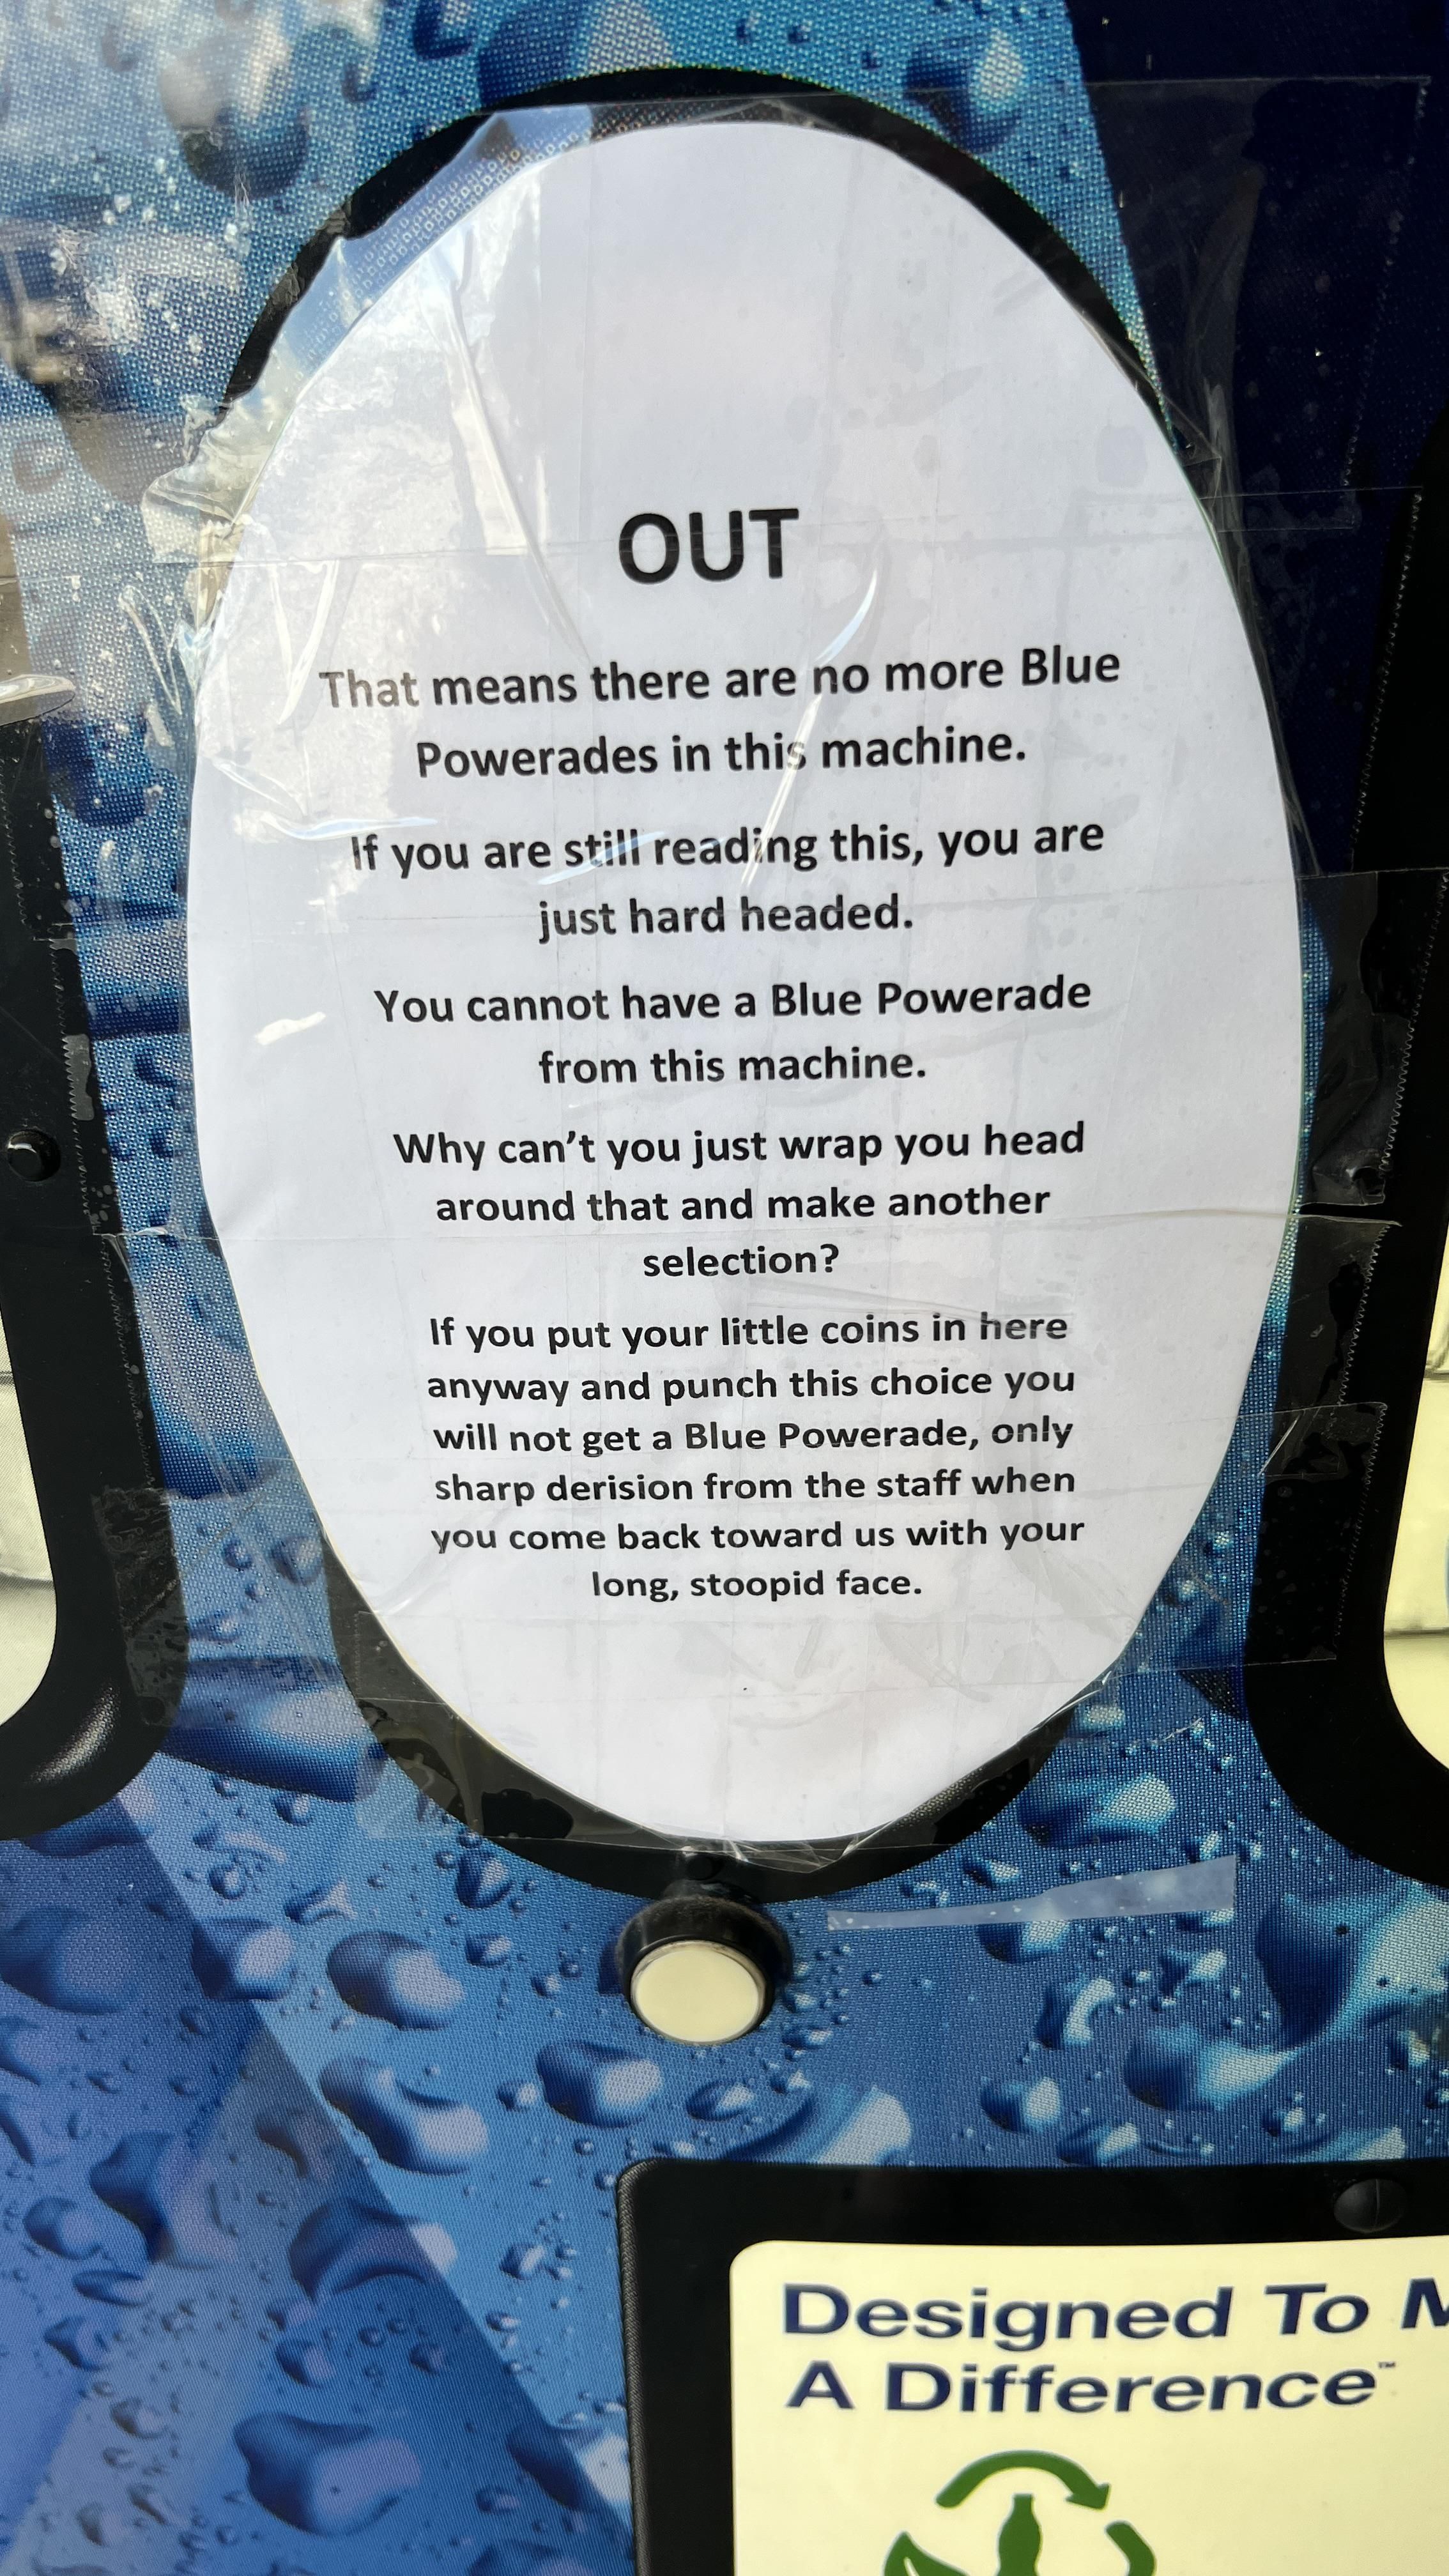 Got any blue Powerade?